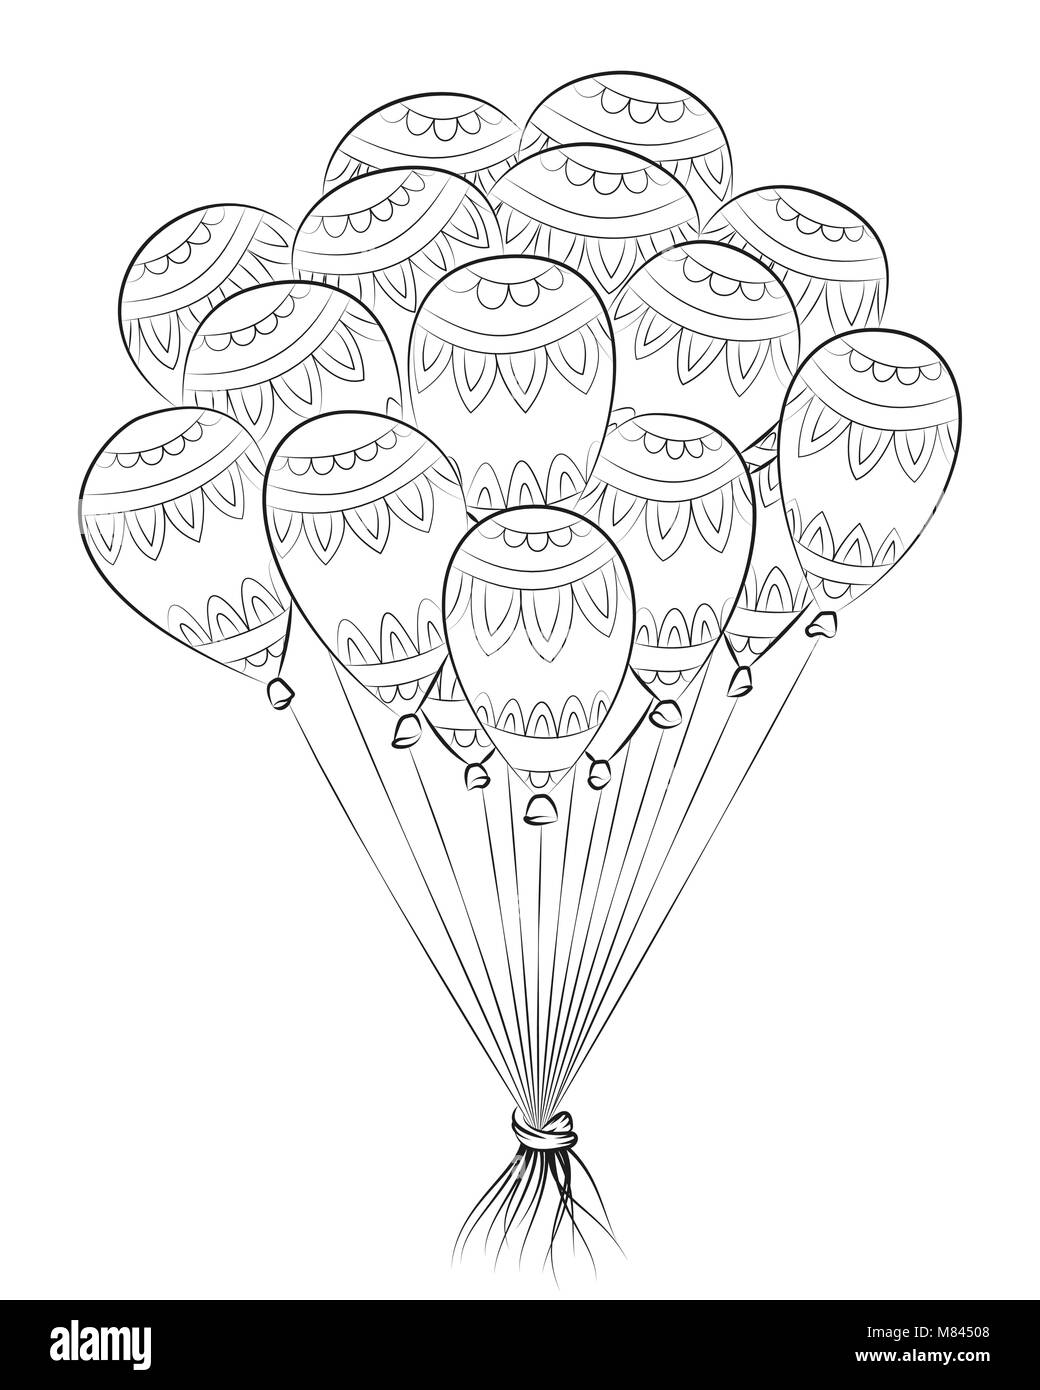 Tangle Zen Ballon Joyeux Anniversaire Zentangle Illustration Vectorielle Livre De Coloriage Pour Adulte Avec Des Boules D Air Image Vectorielle Stock Alamy